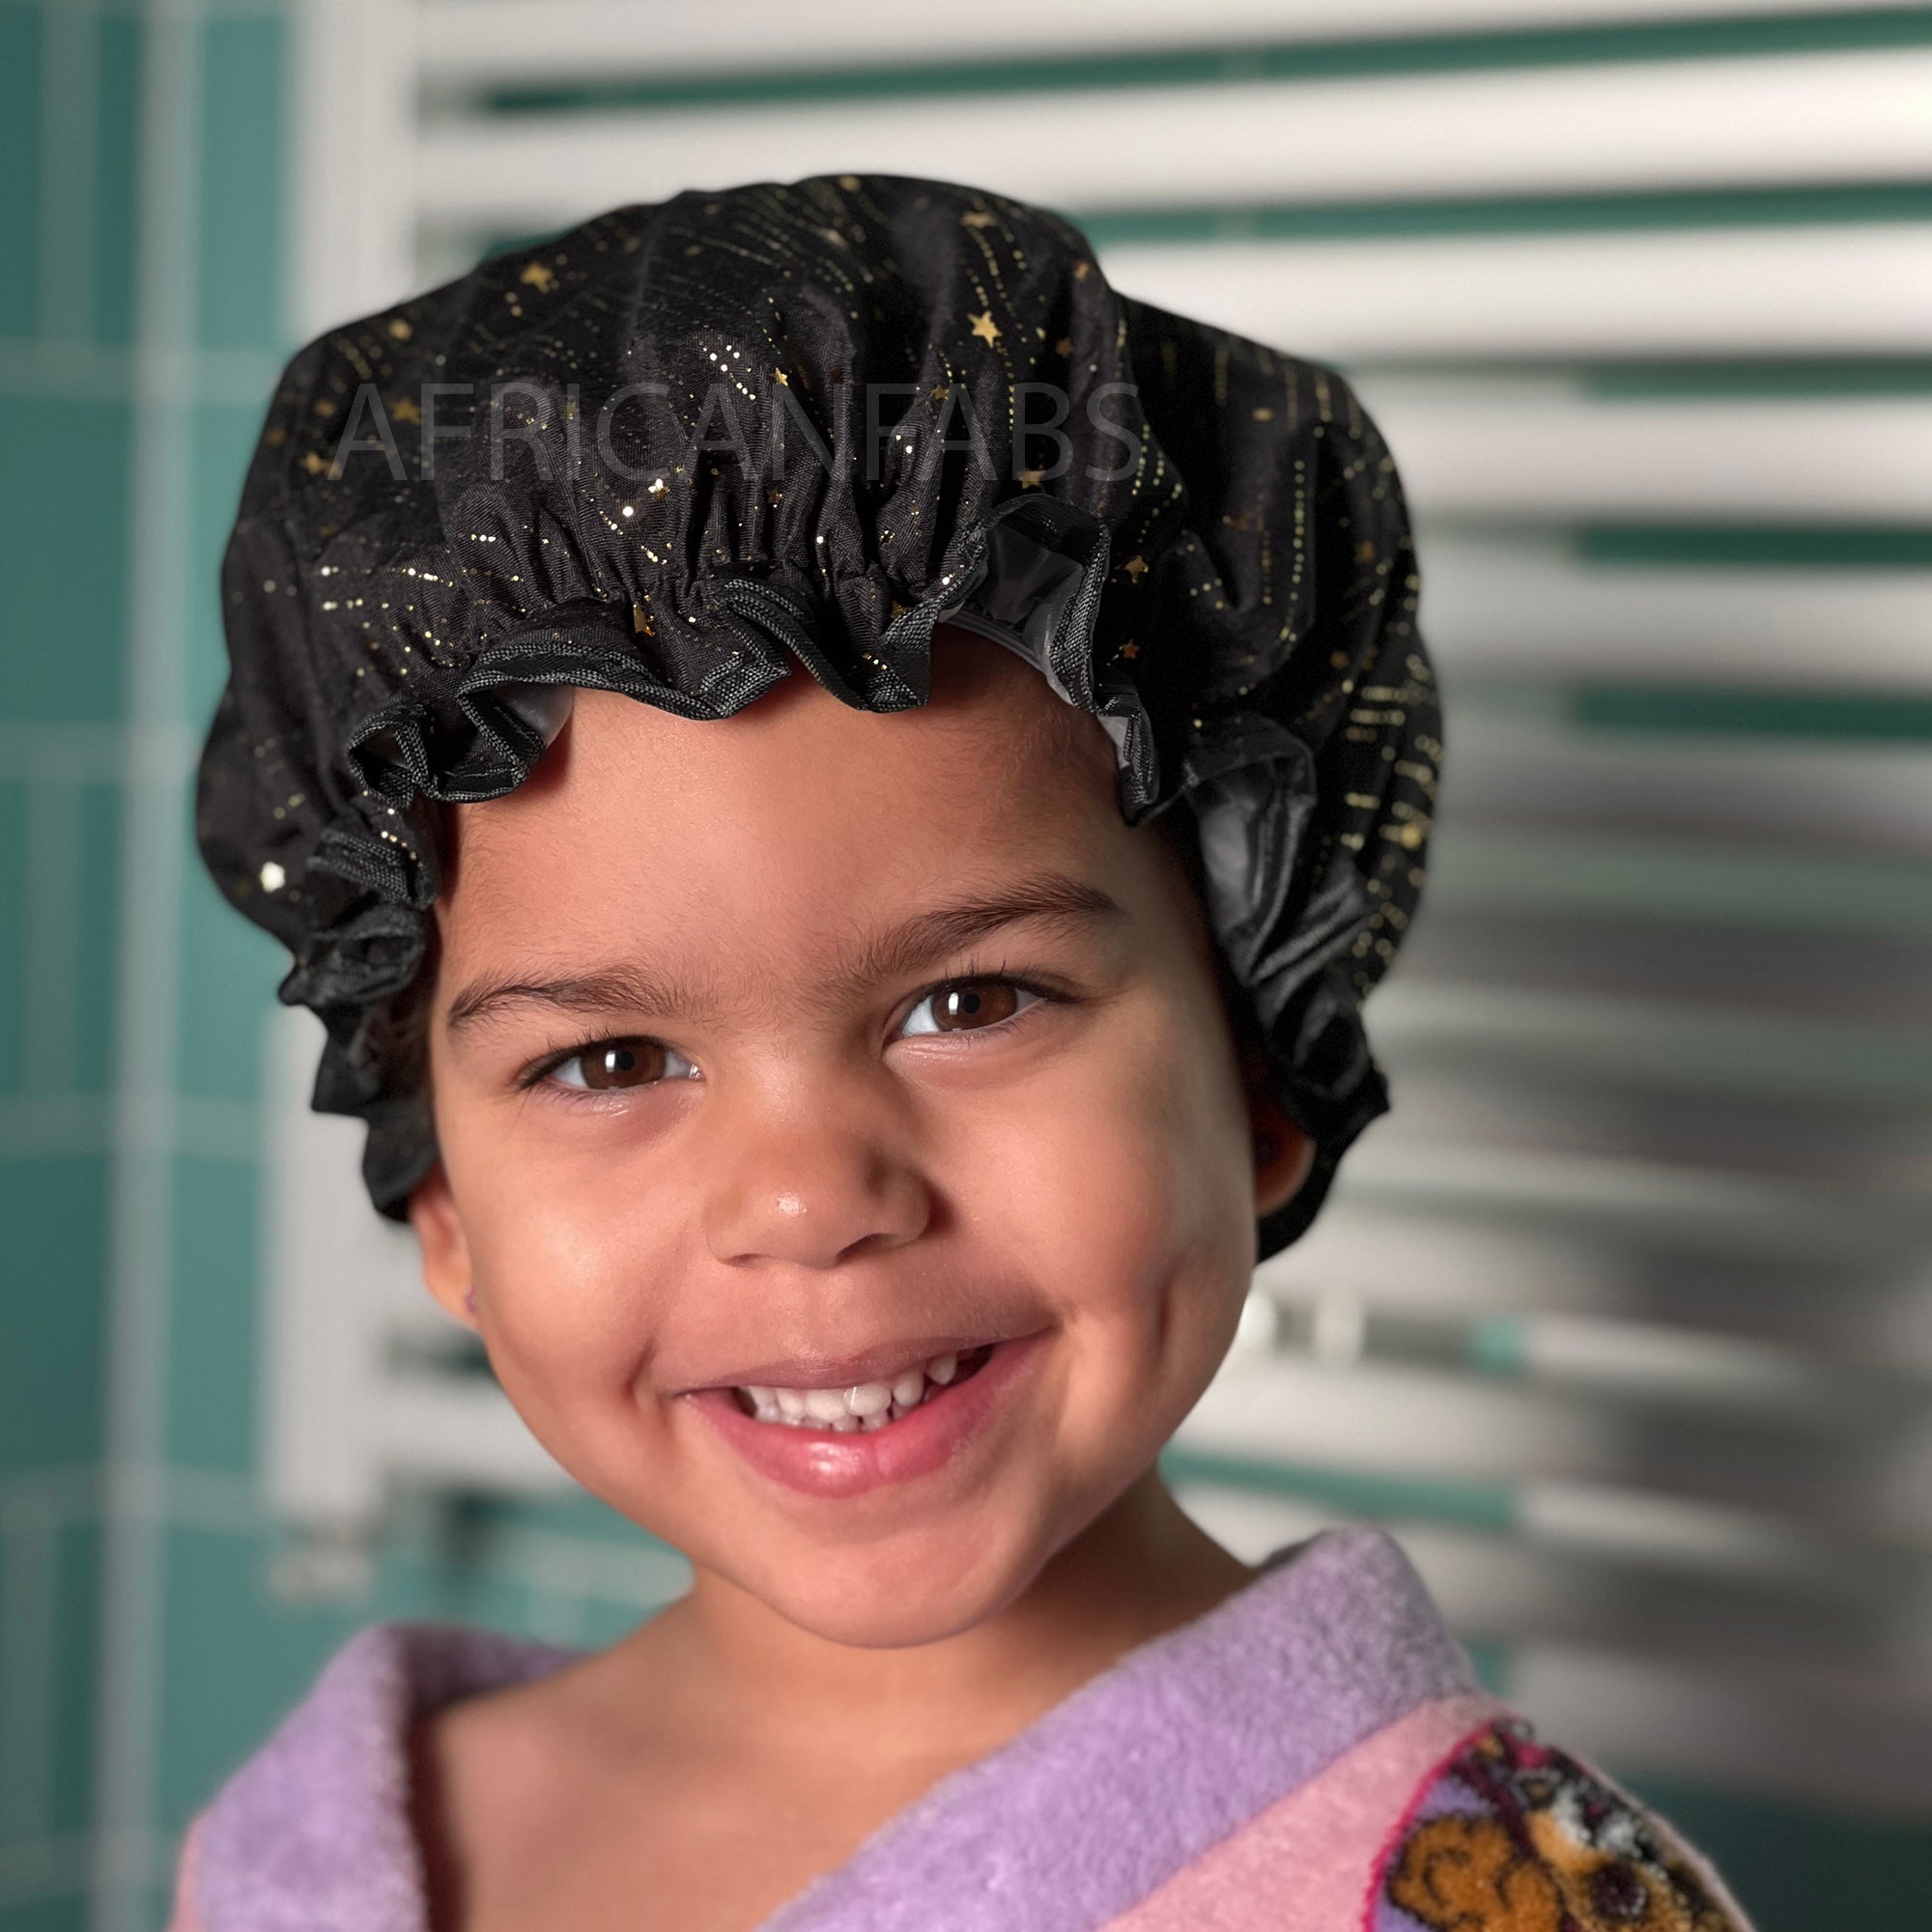 Bonnet de douche pour enfants (réutilisable) - Noir Gold Stars – AfricanFabs